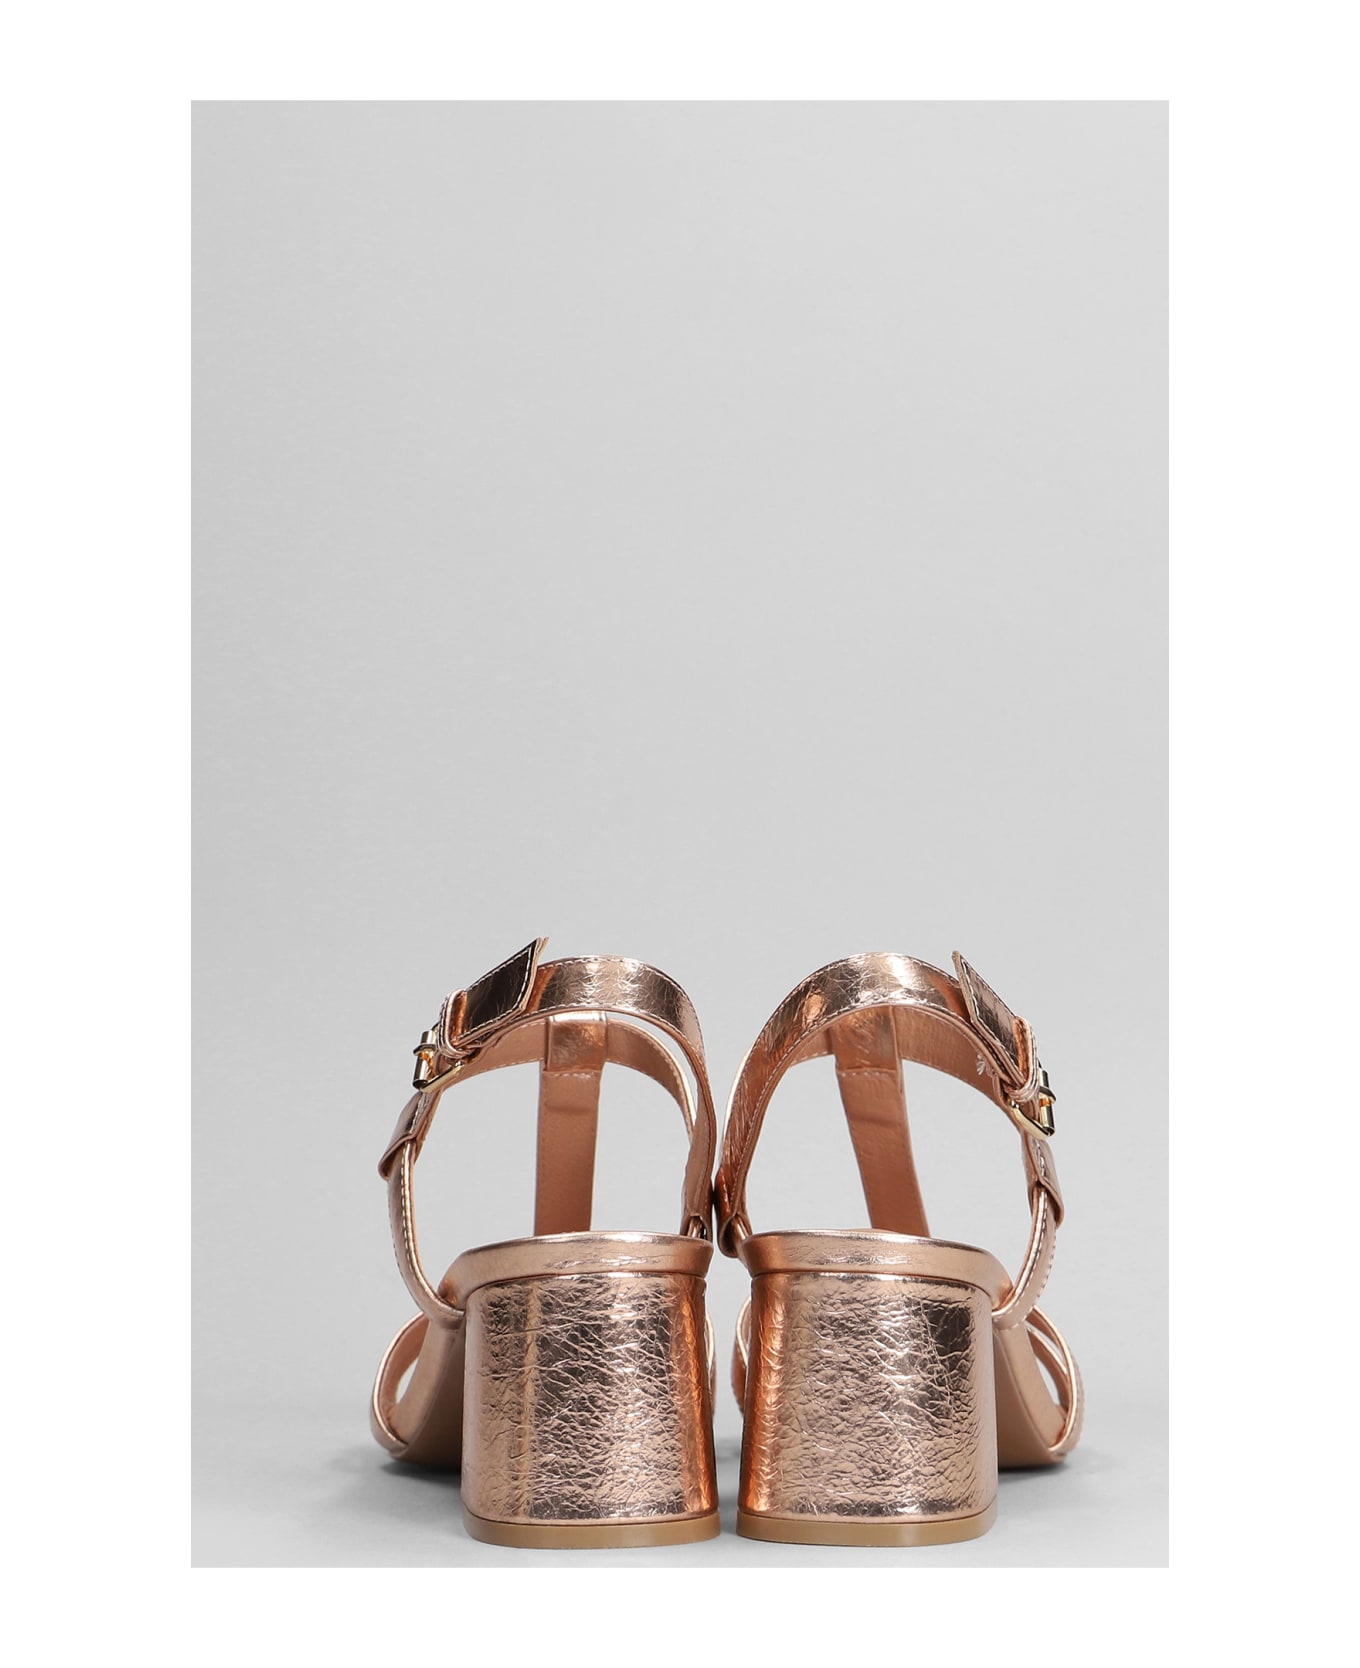 Bibi Lou Rosie Sandals In Copper Leather - copper